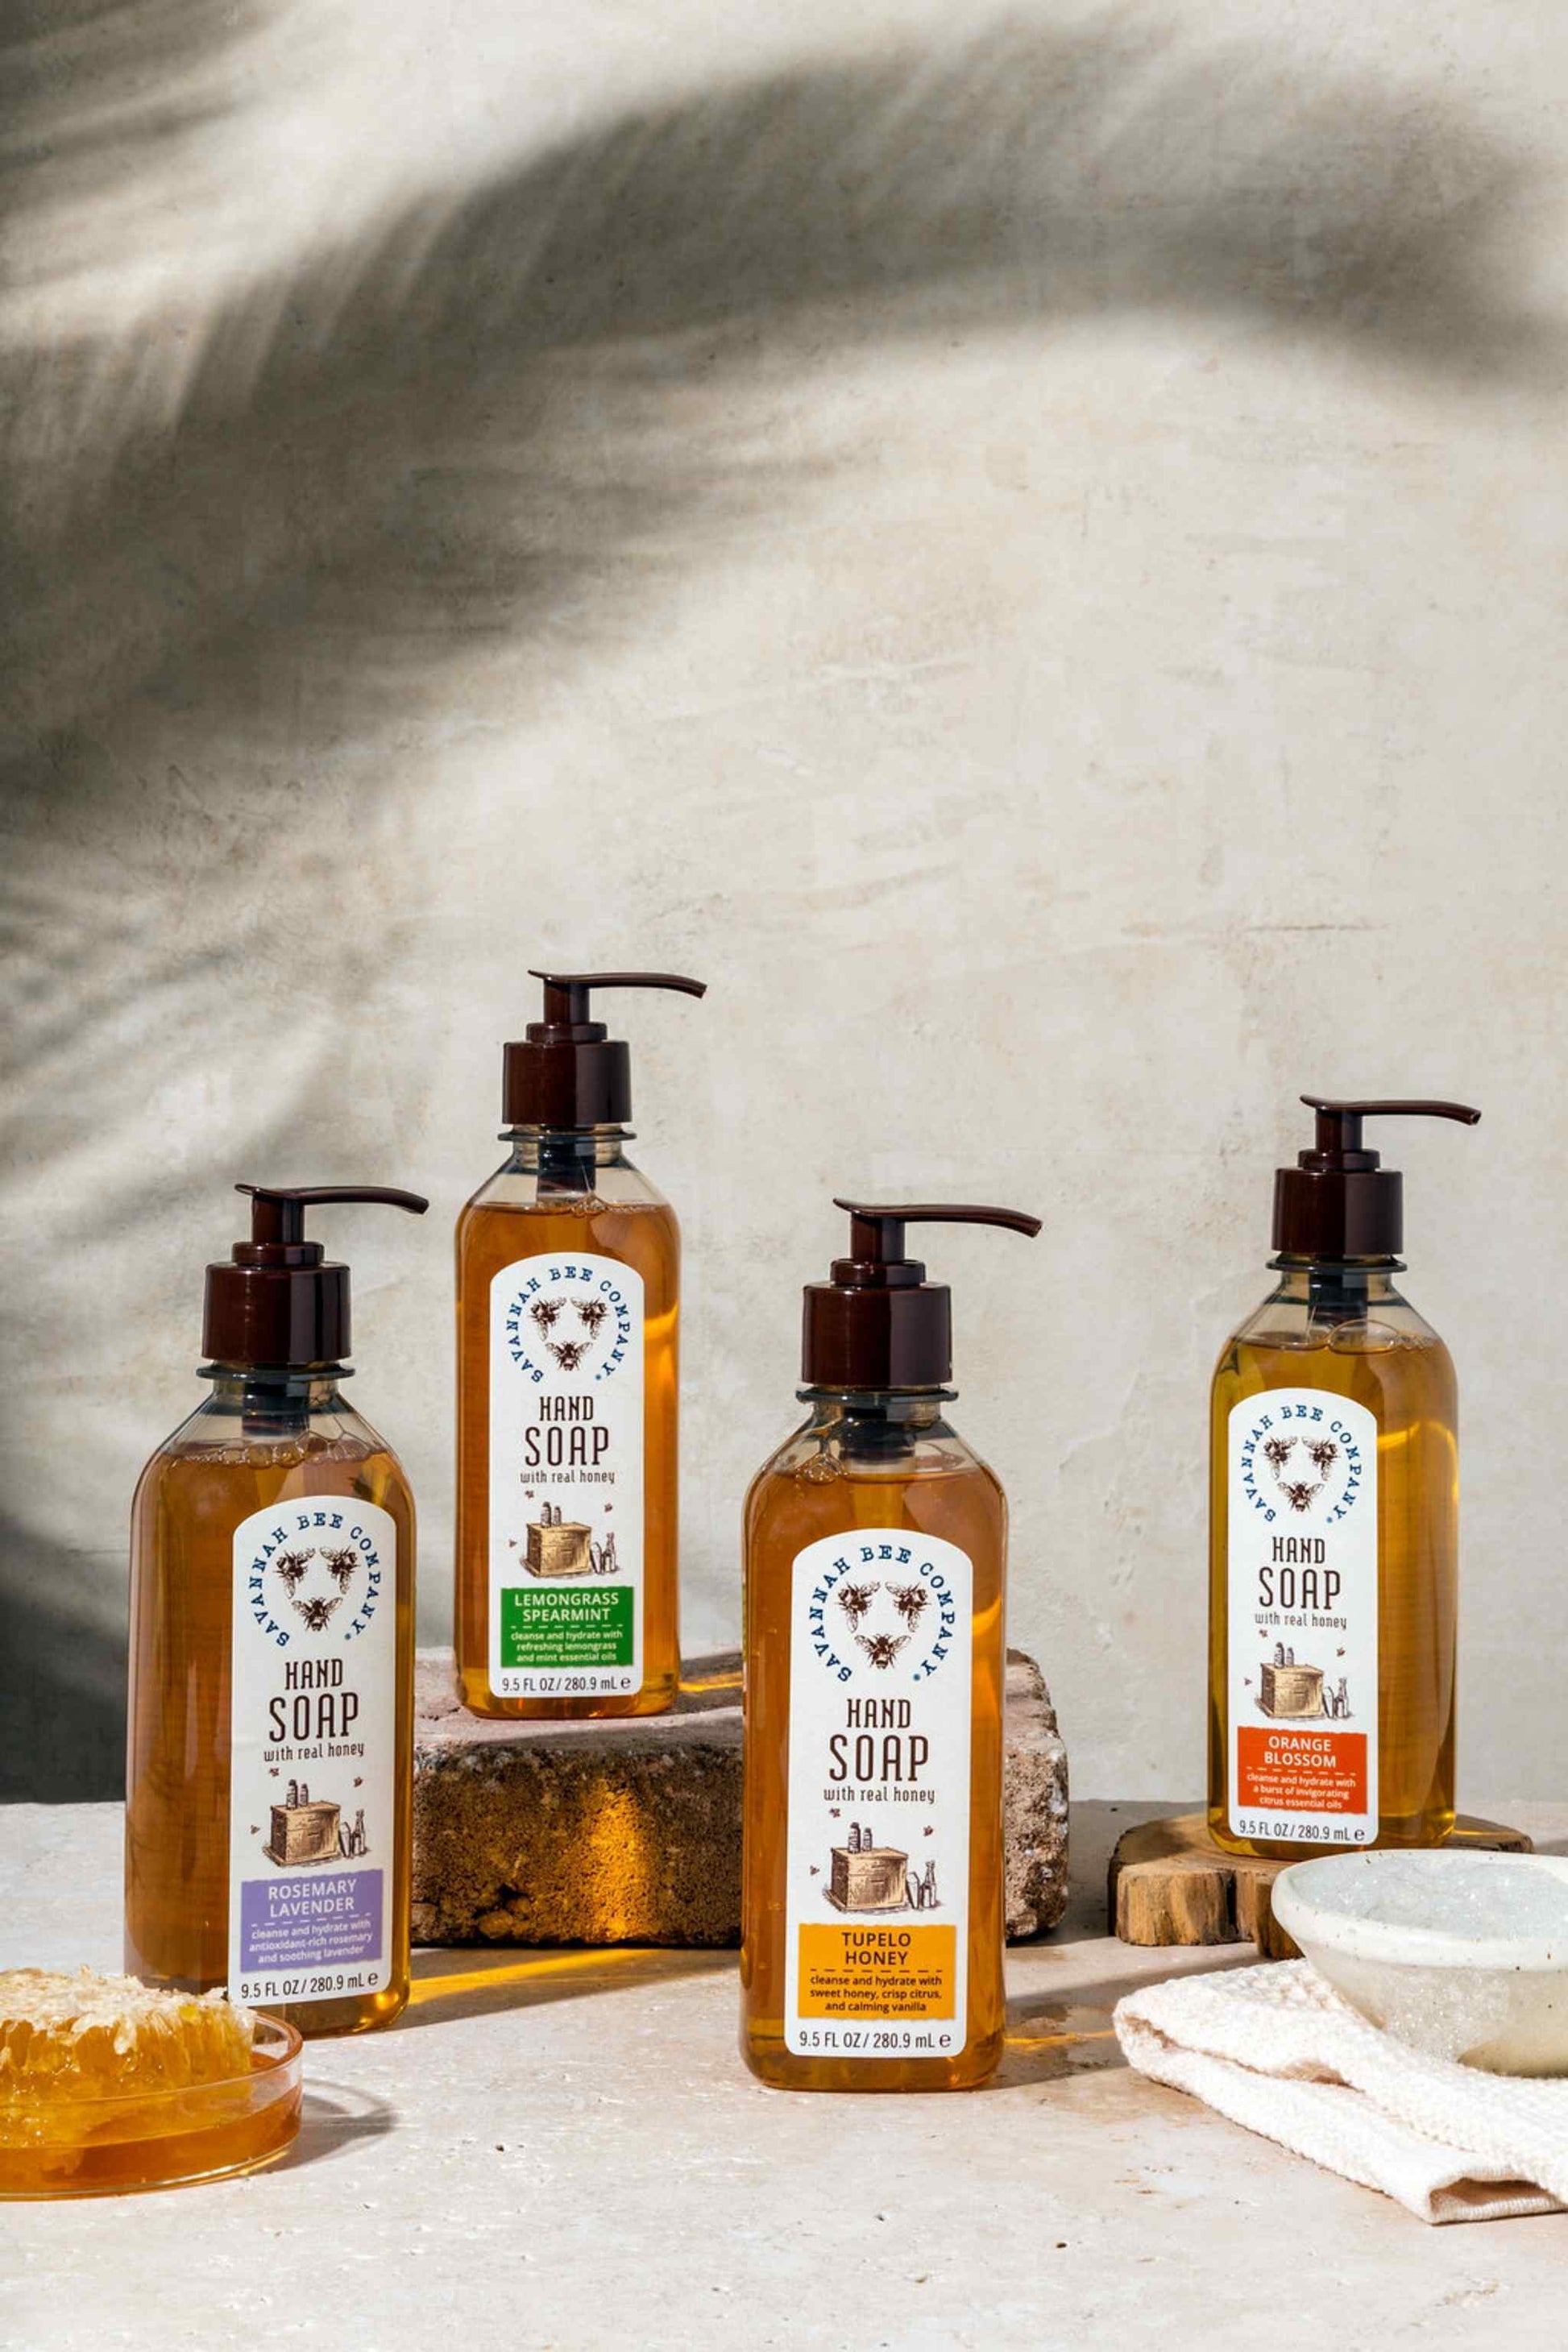 Rosemary Lavender, Lemongrass Spearmint, Tupelo Honey and Orange Blossom Hand Soap